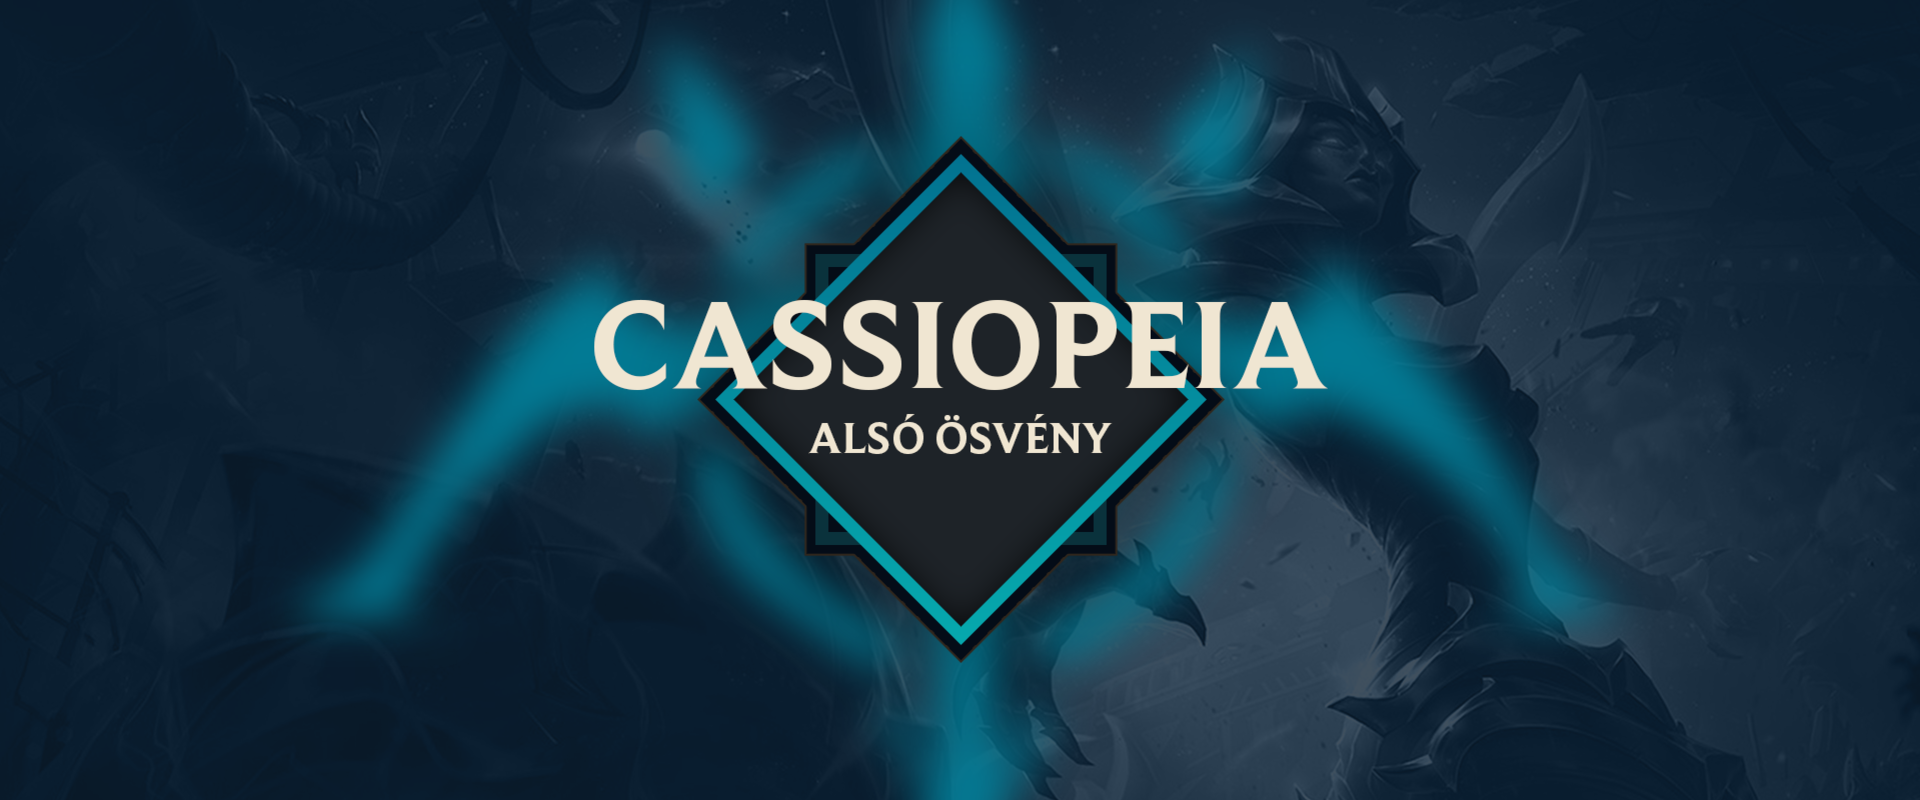 Nem csak lövésszel lehet boldogulni boton: íme Cassiopeia 